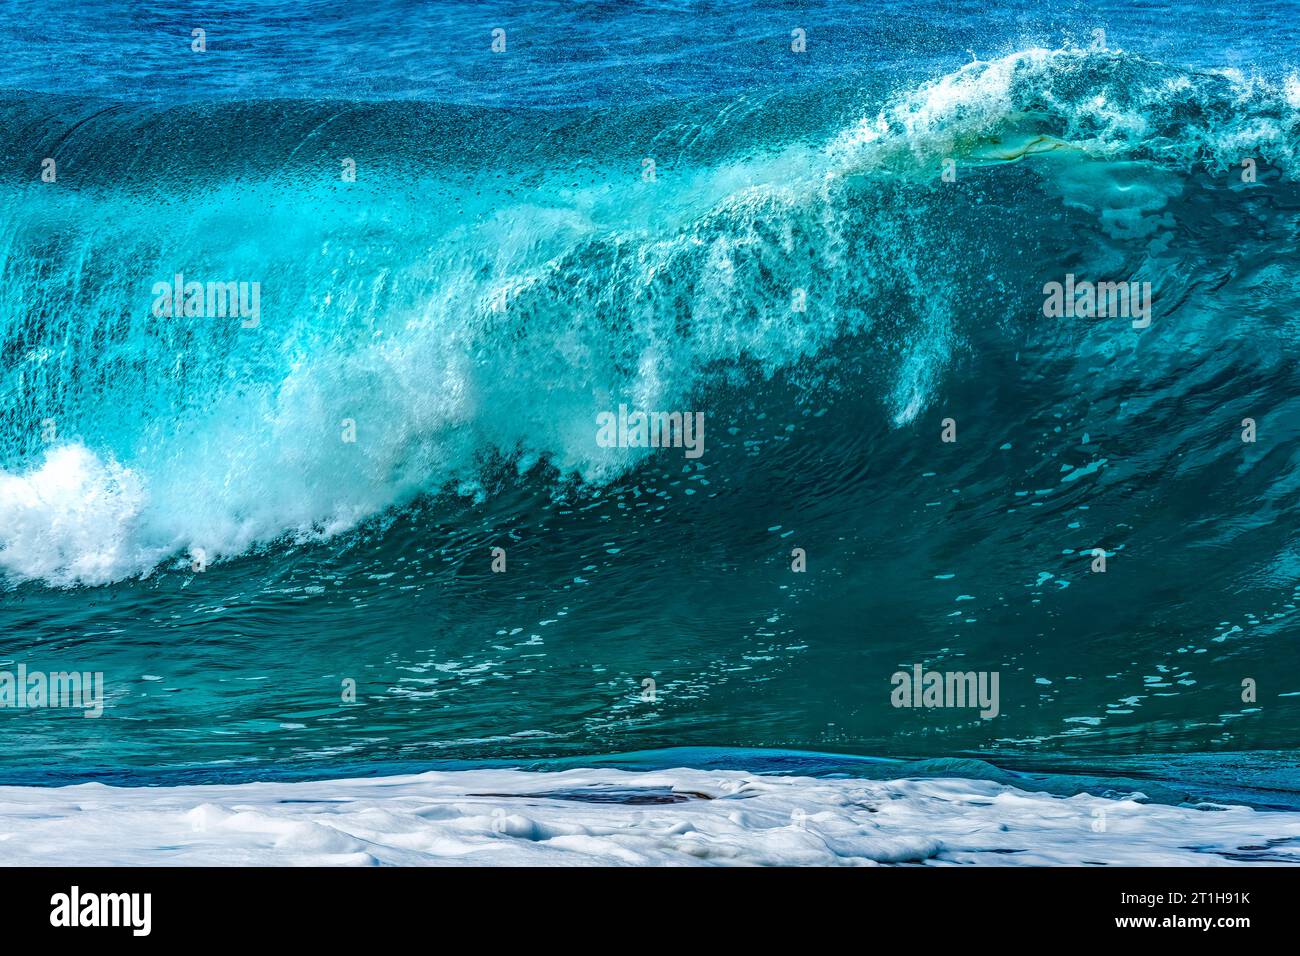 Observation de la grande vague Waimea Bay North Shore Oahu Hawaii. Waimea Bay est célèbre pour le surf des grandes vagues. Ce jour-là, les vagues étaient hautes de 15 à 20 pieds. Banque D'Images